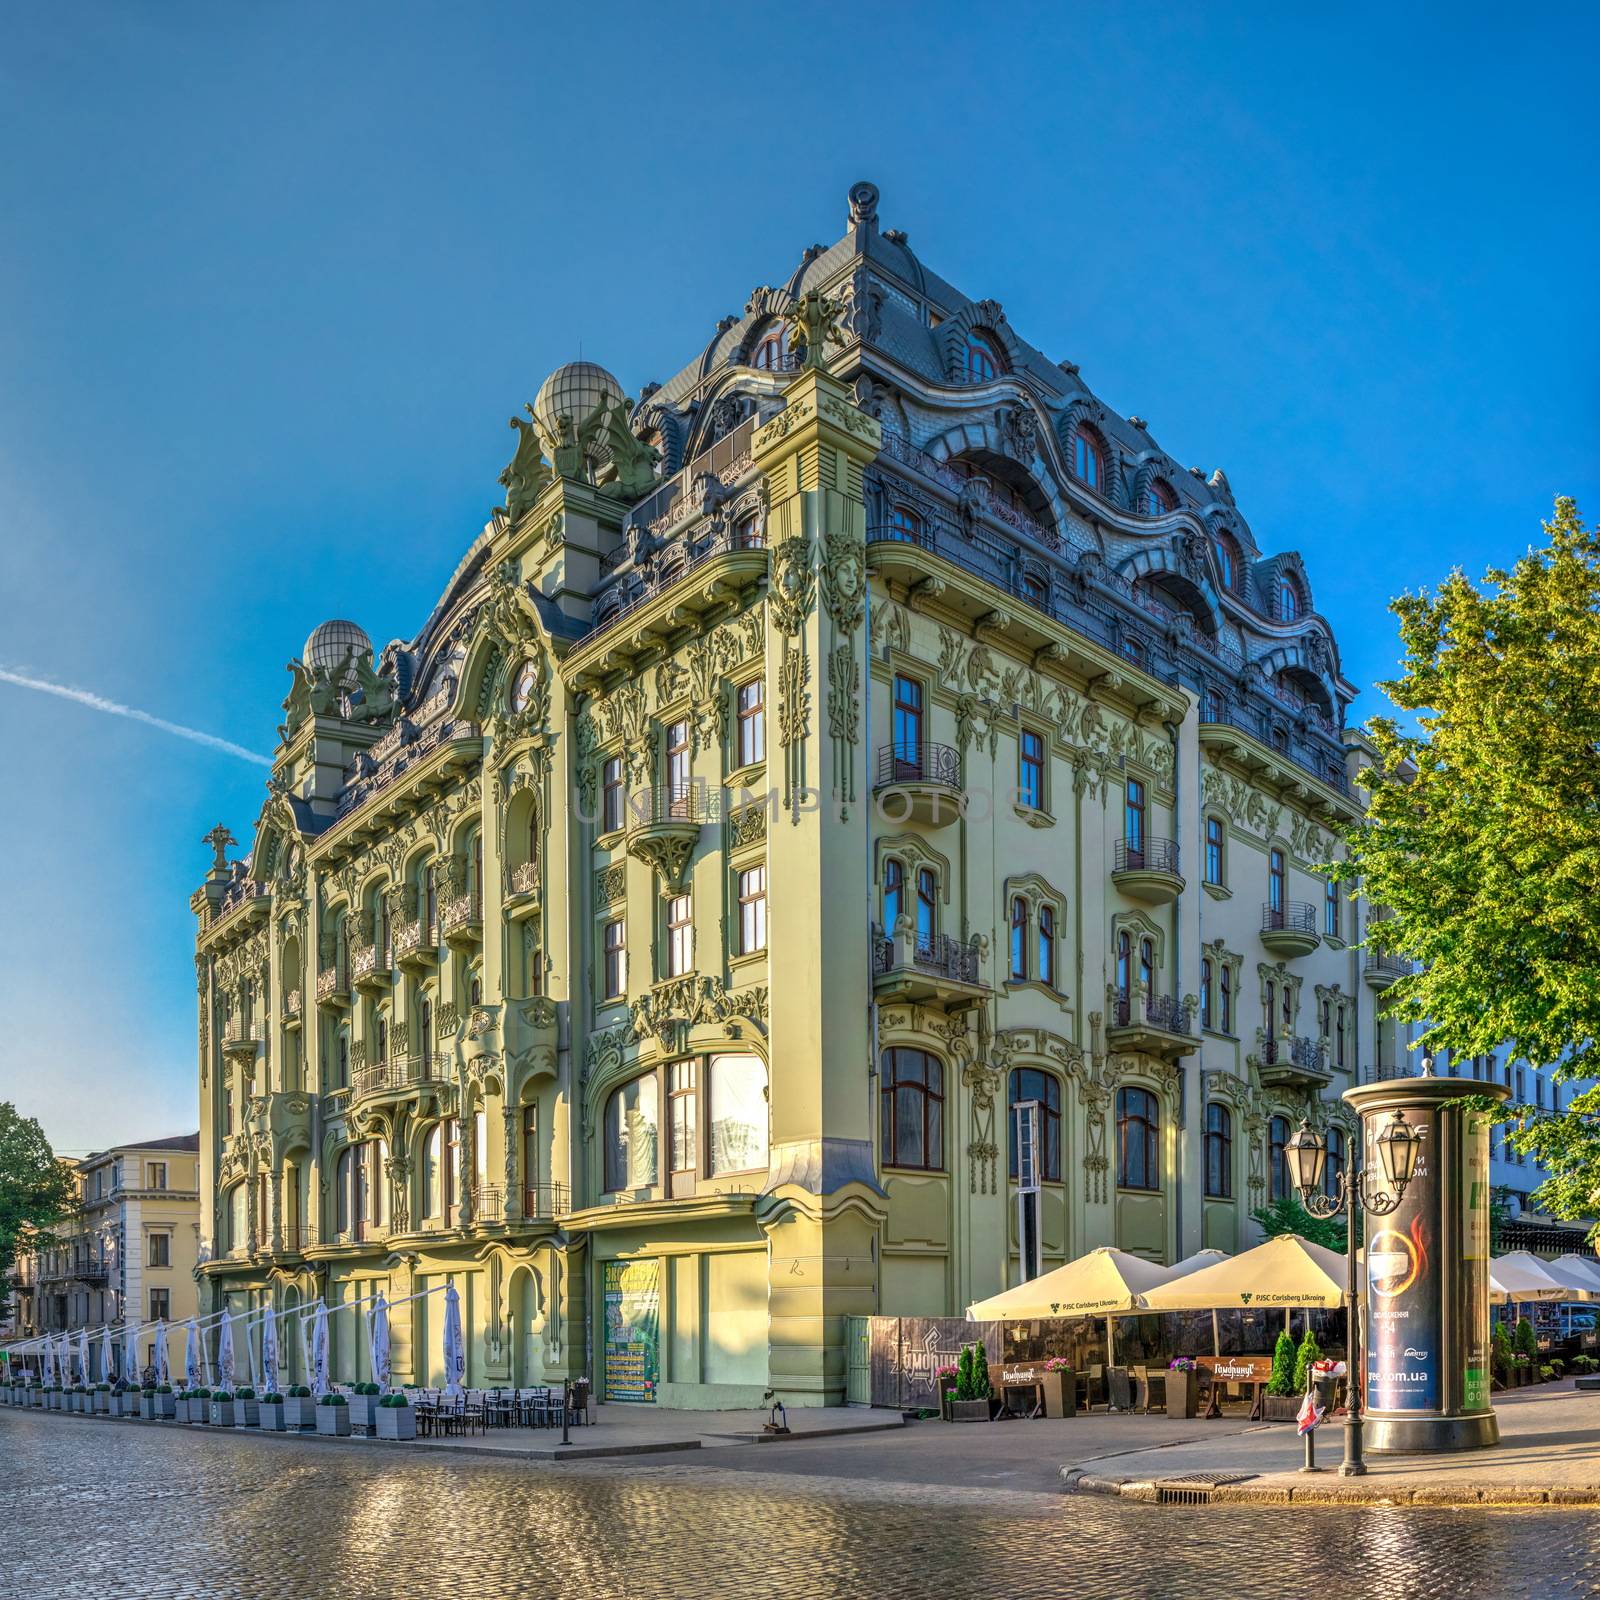 Hotel Bolshaya Moskovskaya in Odessa, Ukraine by Multipedia